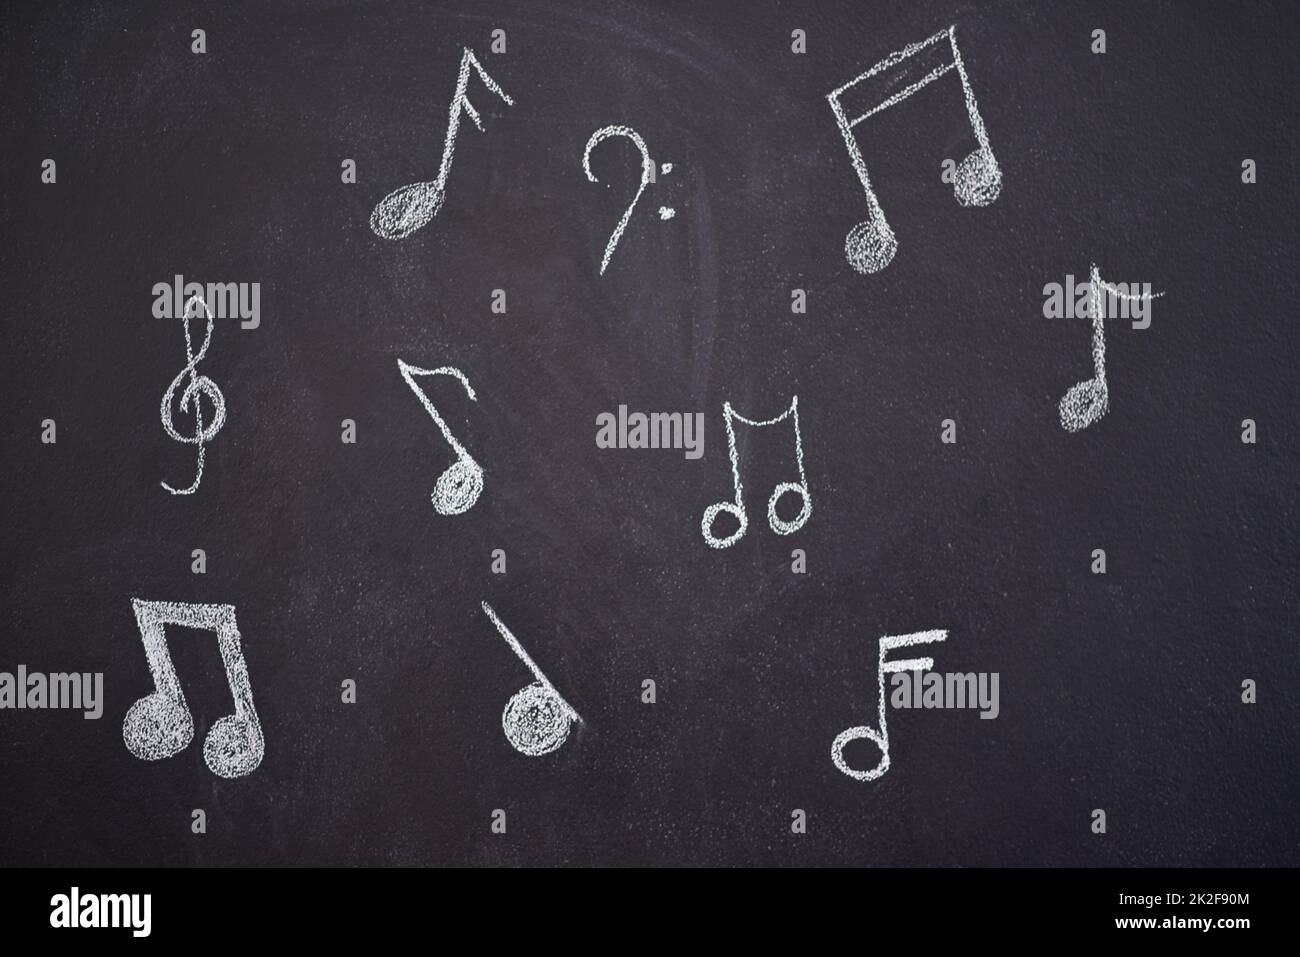 Laissez la musique vous inspirer. Photo de diverses notes musicales dessinées sur un tableau de craie. Banque D'Images